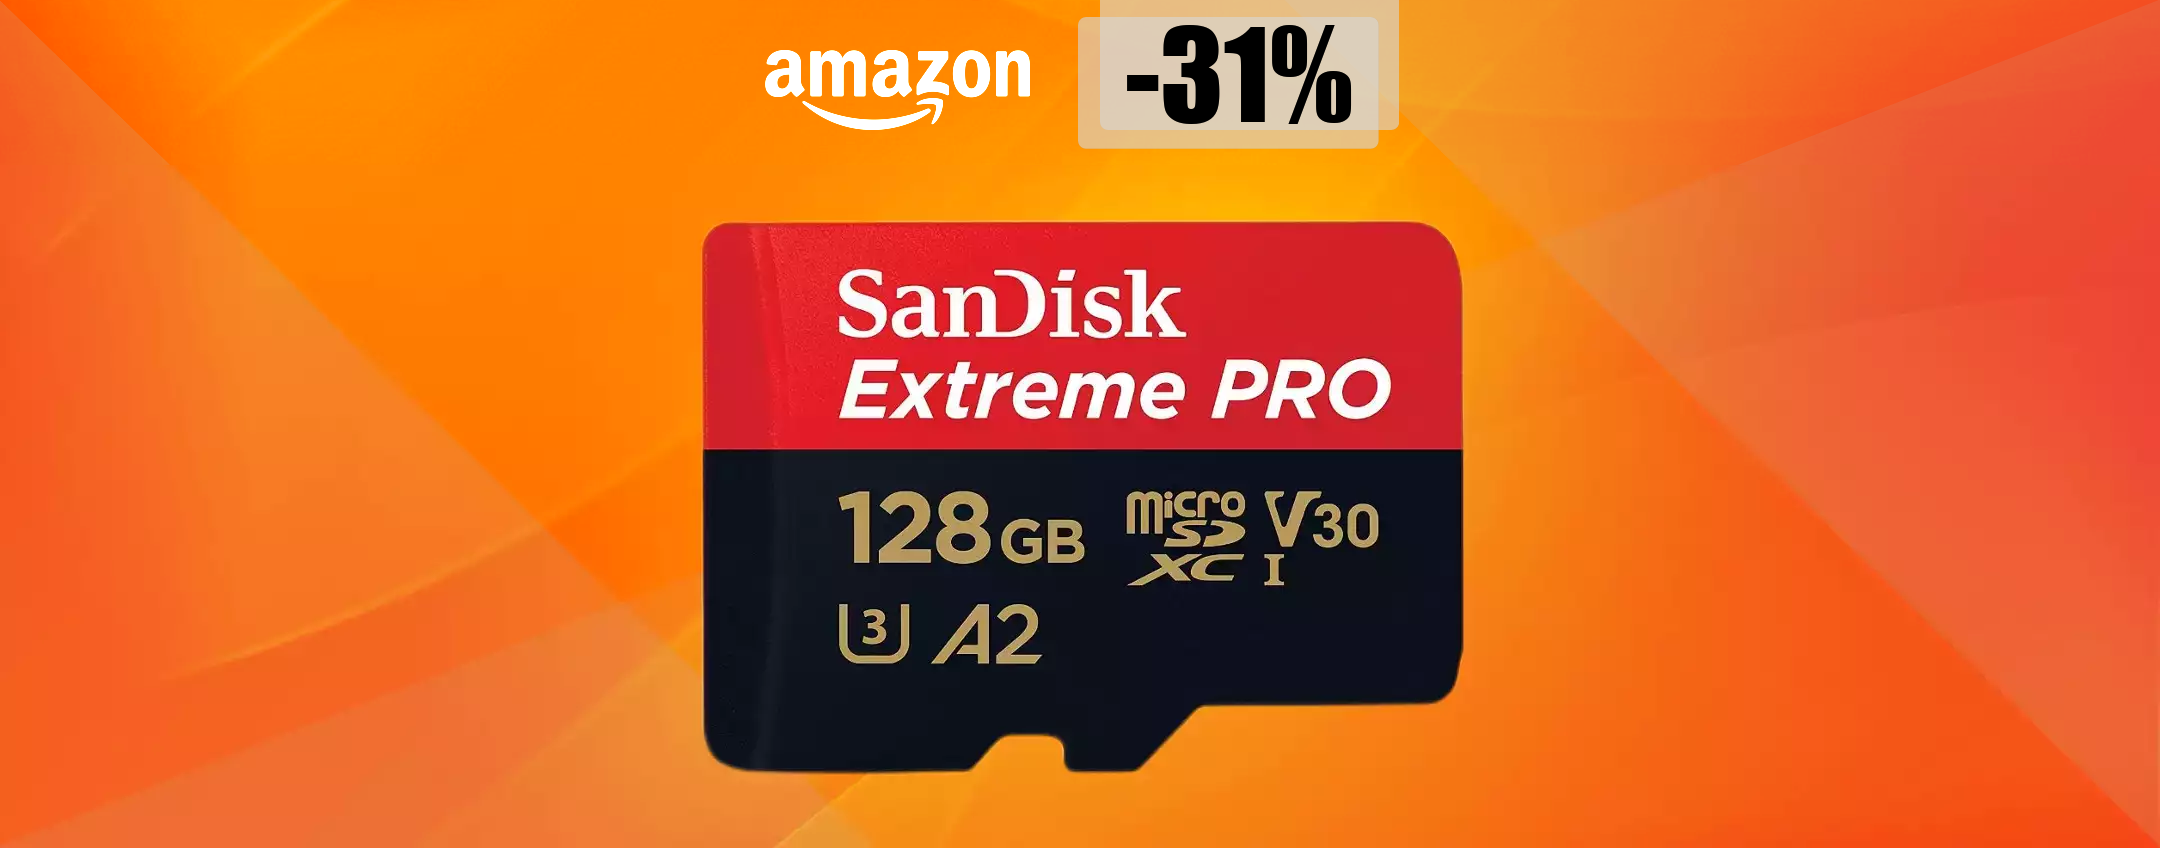 MicroSD SanDisk 128GB, un autentico FULMINE: ti bastano appena 34€